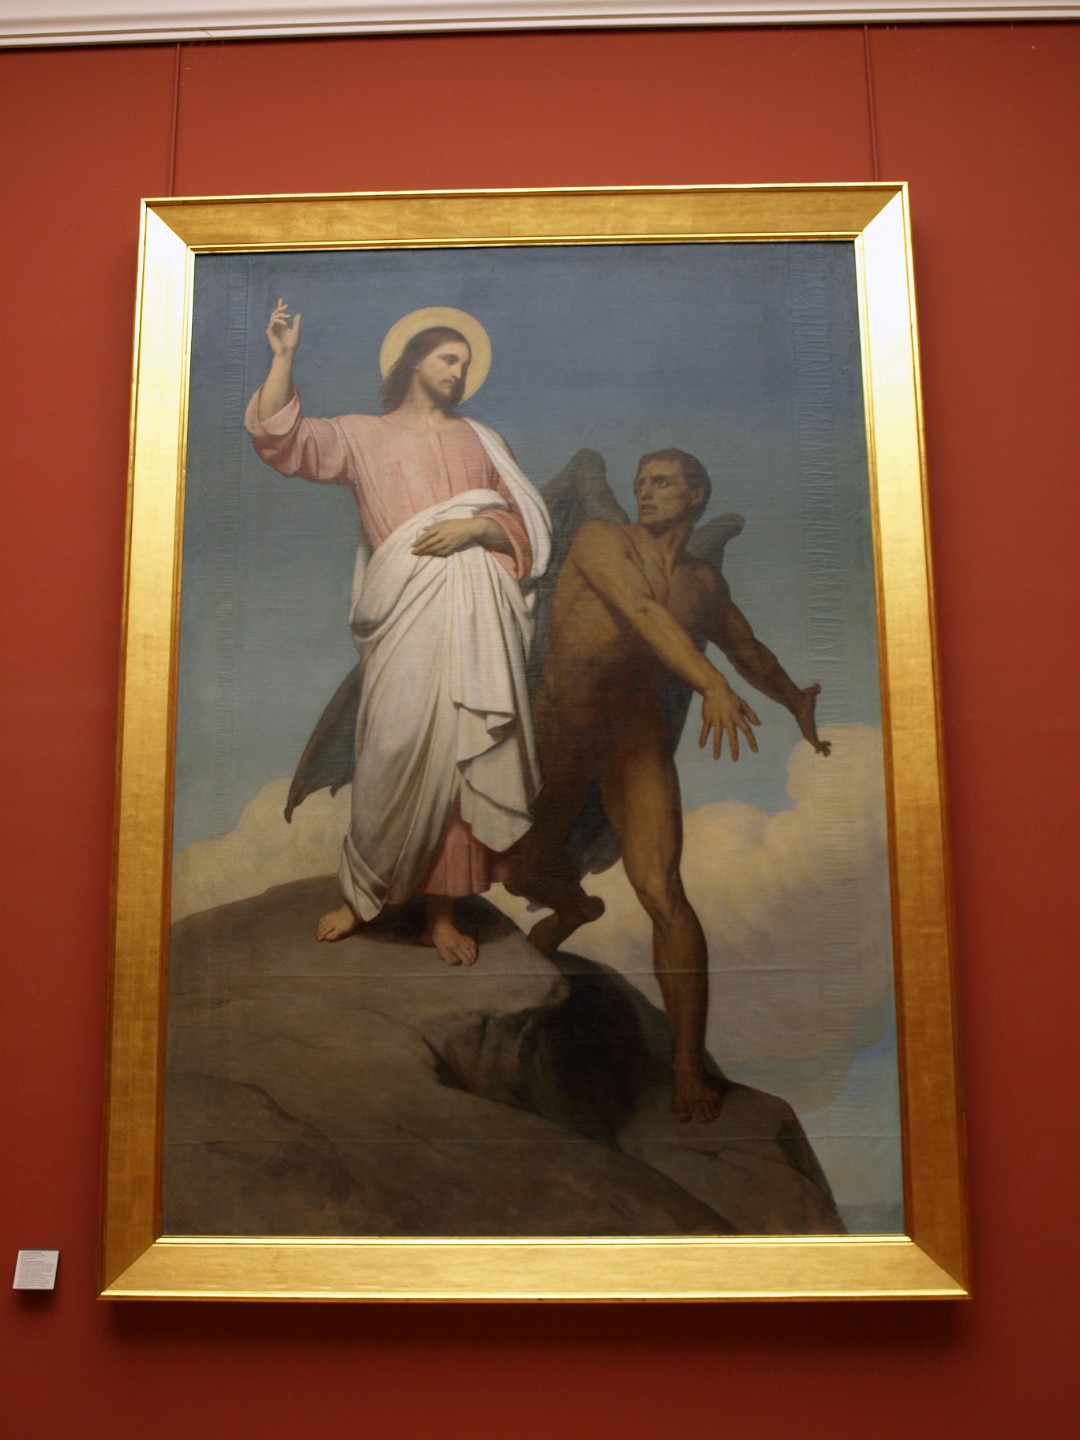 La Tentation du Christ by Ary Scheffer